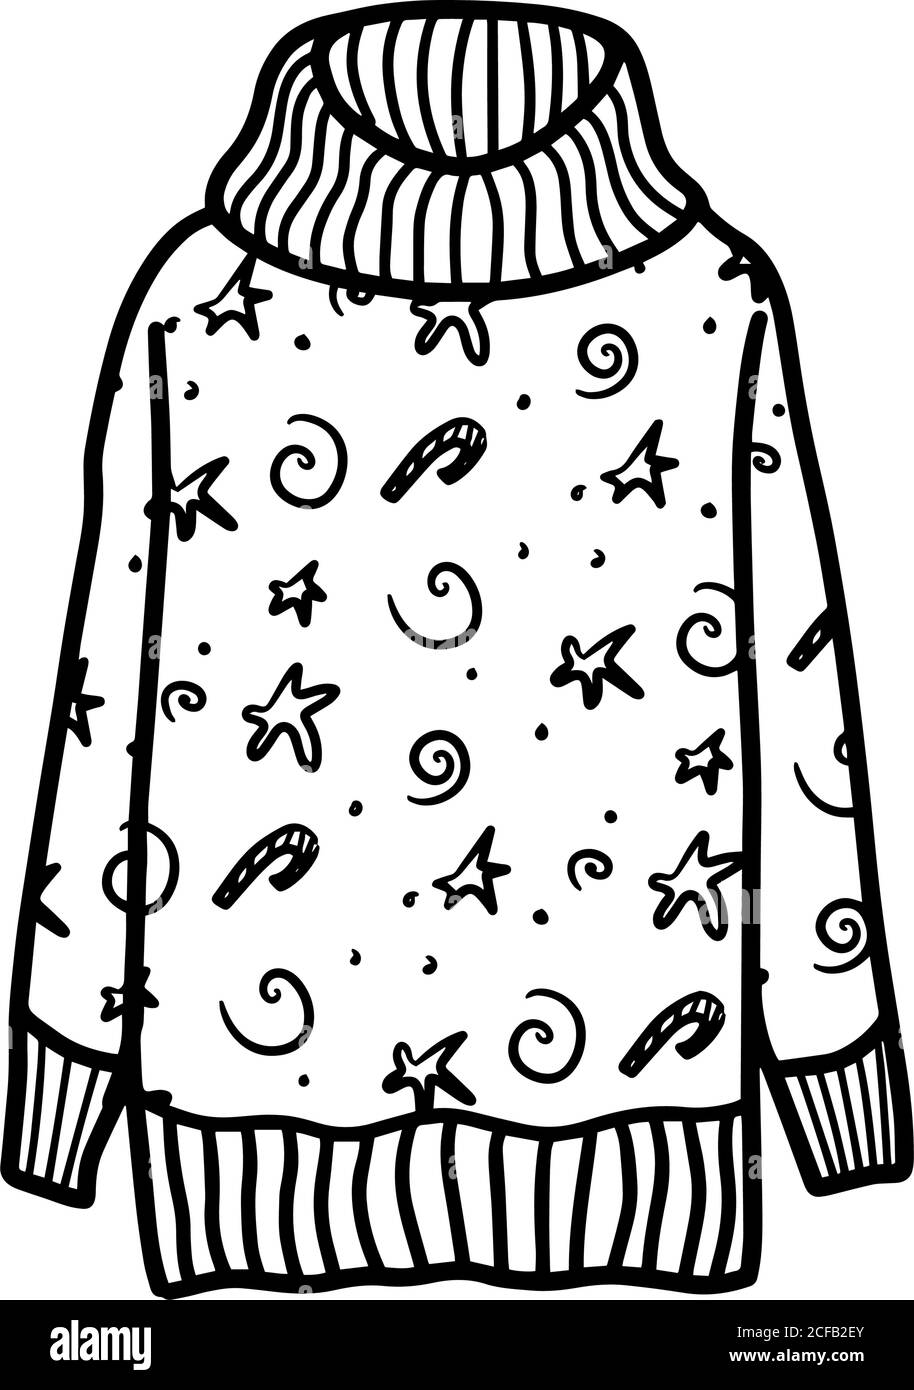 Pullover lavorato a maglia carino con motivi natalizi isolati su sfondo bianco. Maglione caldo e accogliente. Illustrazione vettoriale in stile Doodle Illustrazione Vettoriale